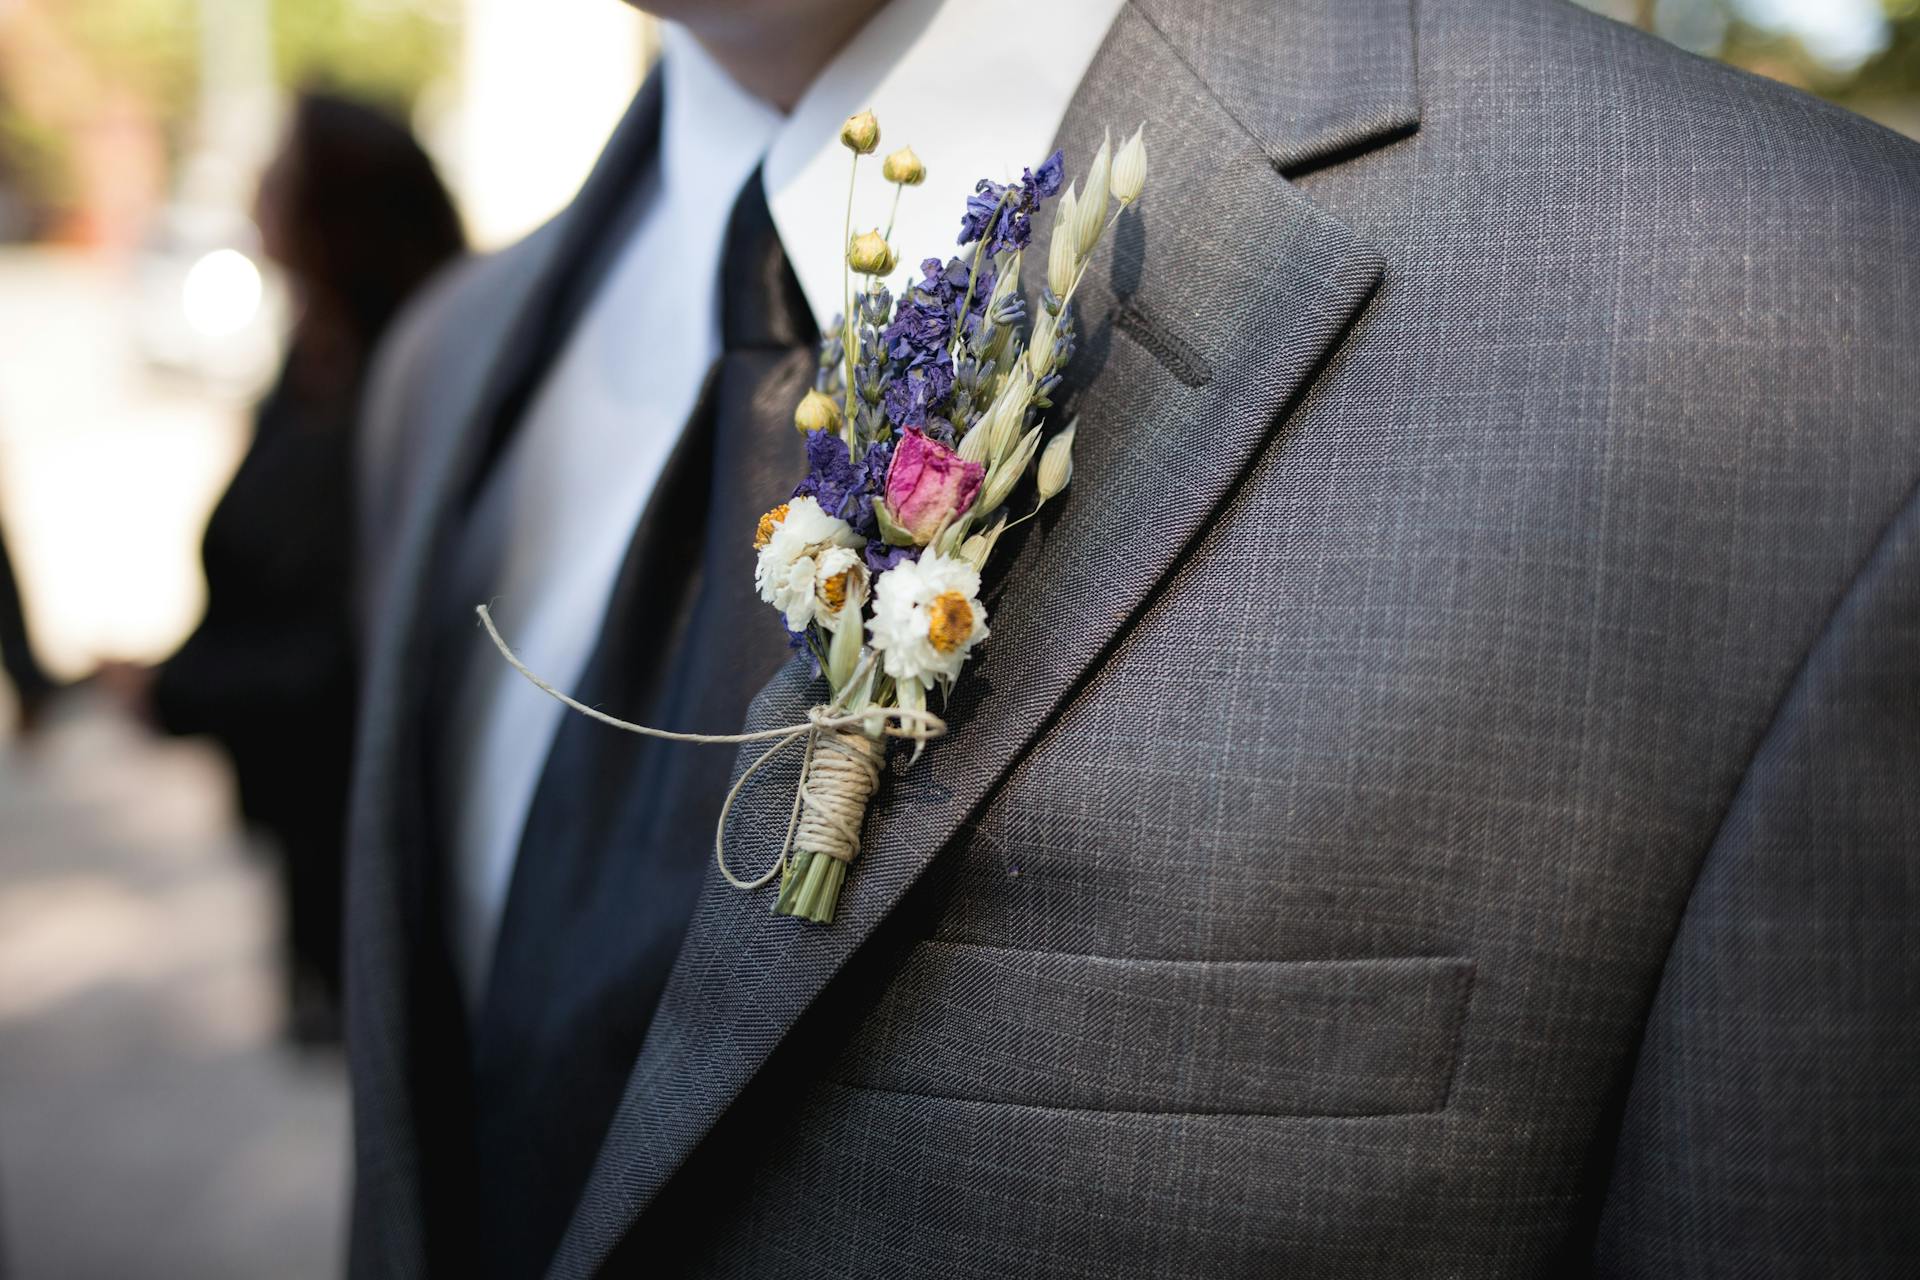 A groom | Source: Pexels